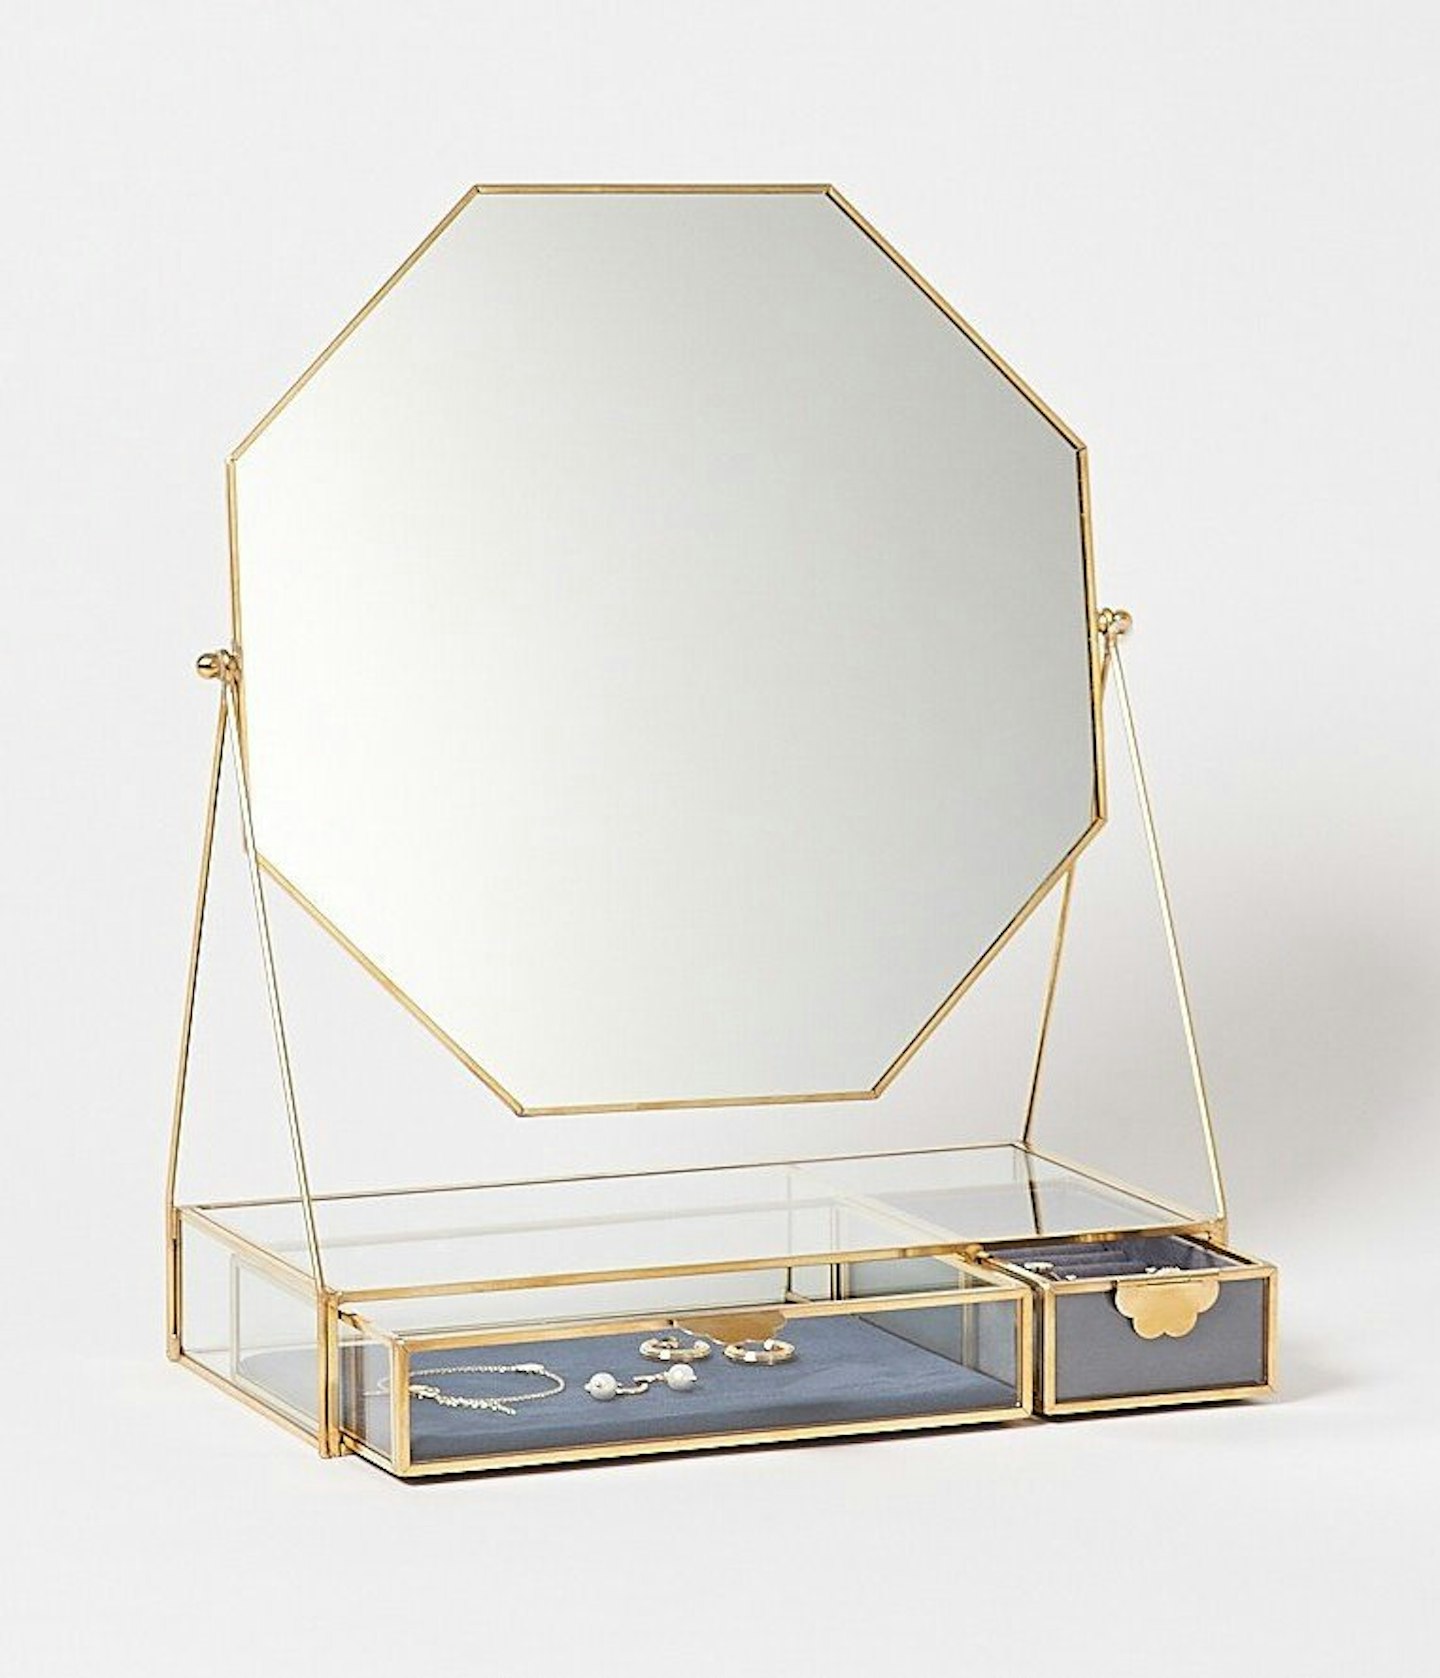 Oliver Bonas, Gold & Glass Scallop Pull Blue Velvet Octagonal Dressing Table Mirror, £69.50